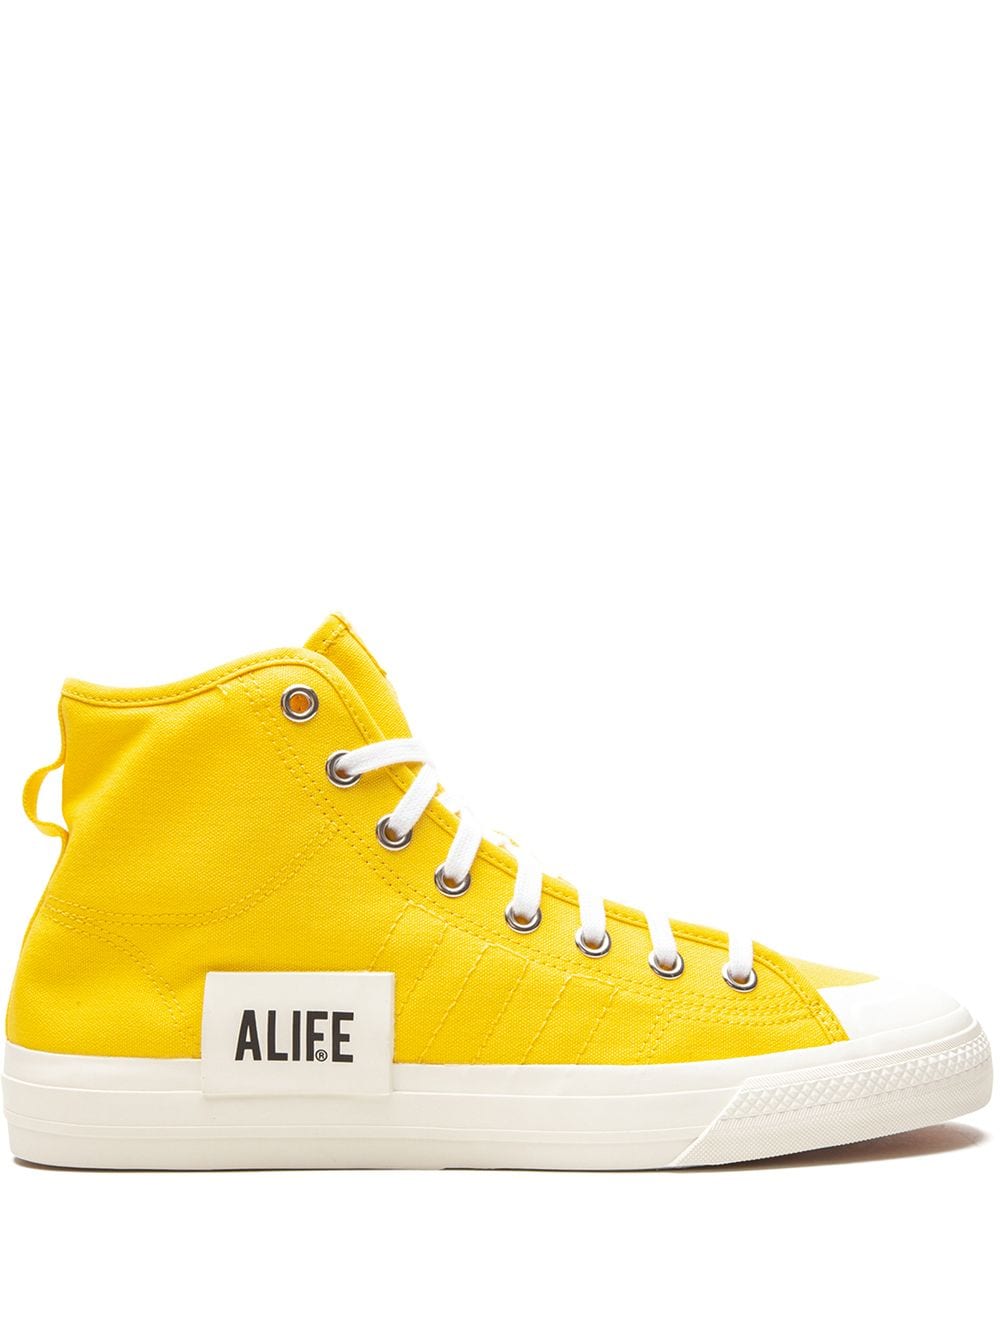 adidas x Alife Consortium Nizza Hi sneakers - Yellow von adidas